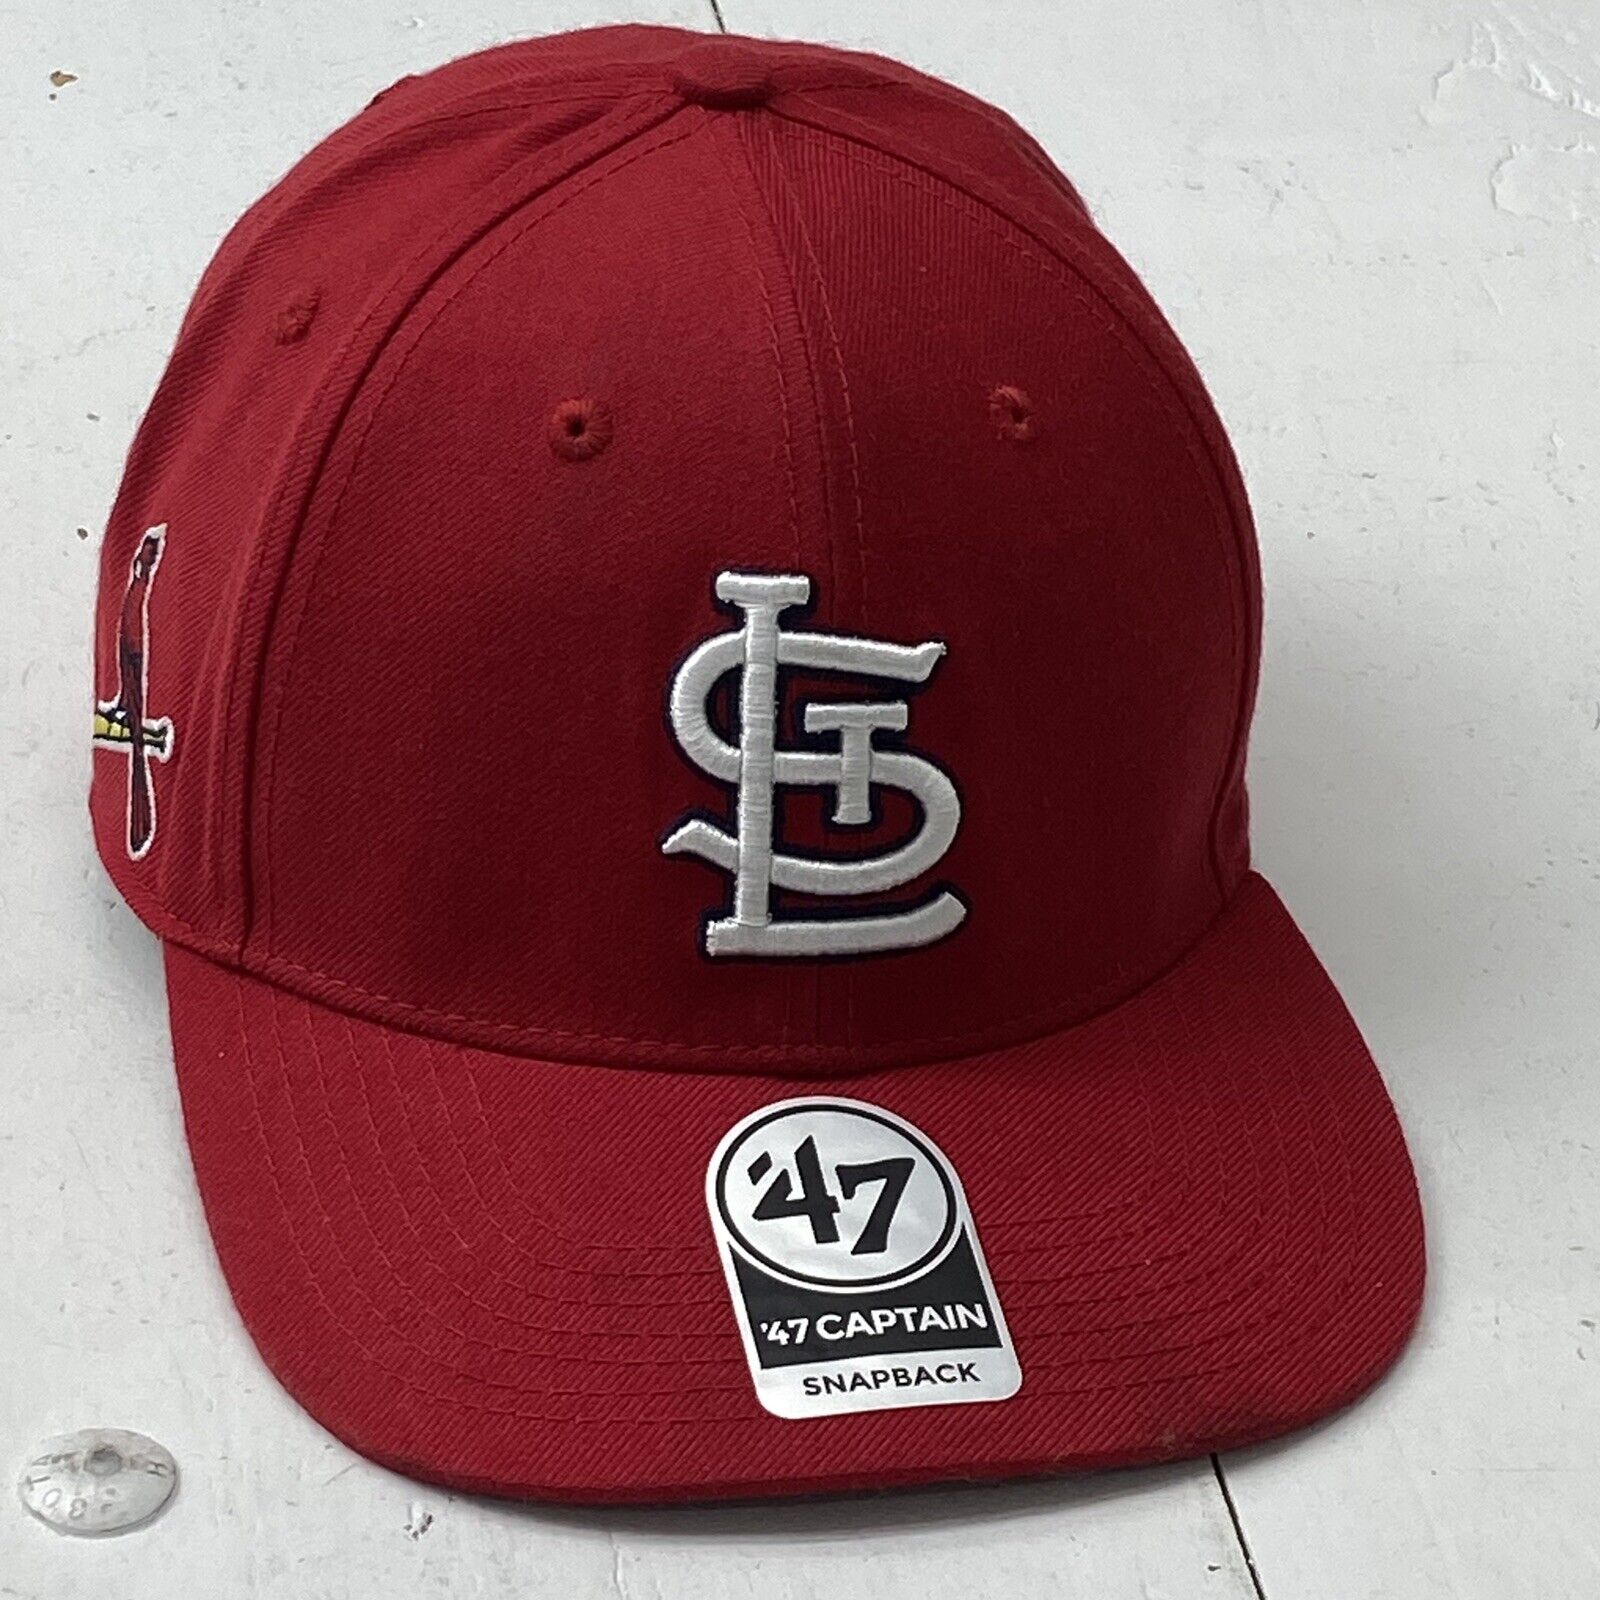 St. Louis Cardinals '47 Rangefinder brrr Trucker Adjustable Hat - Red